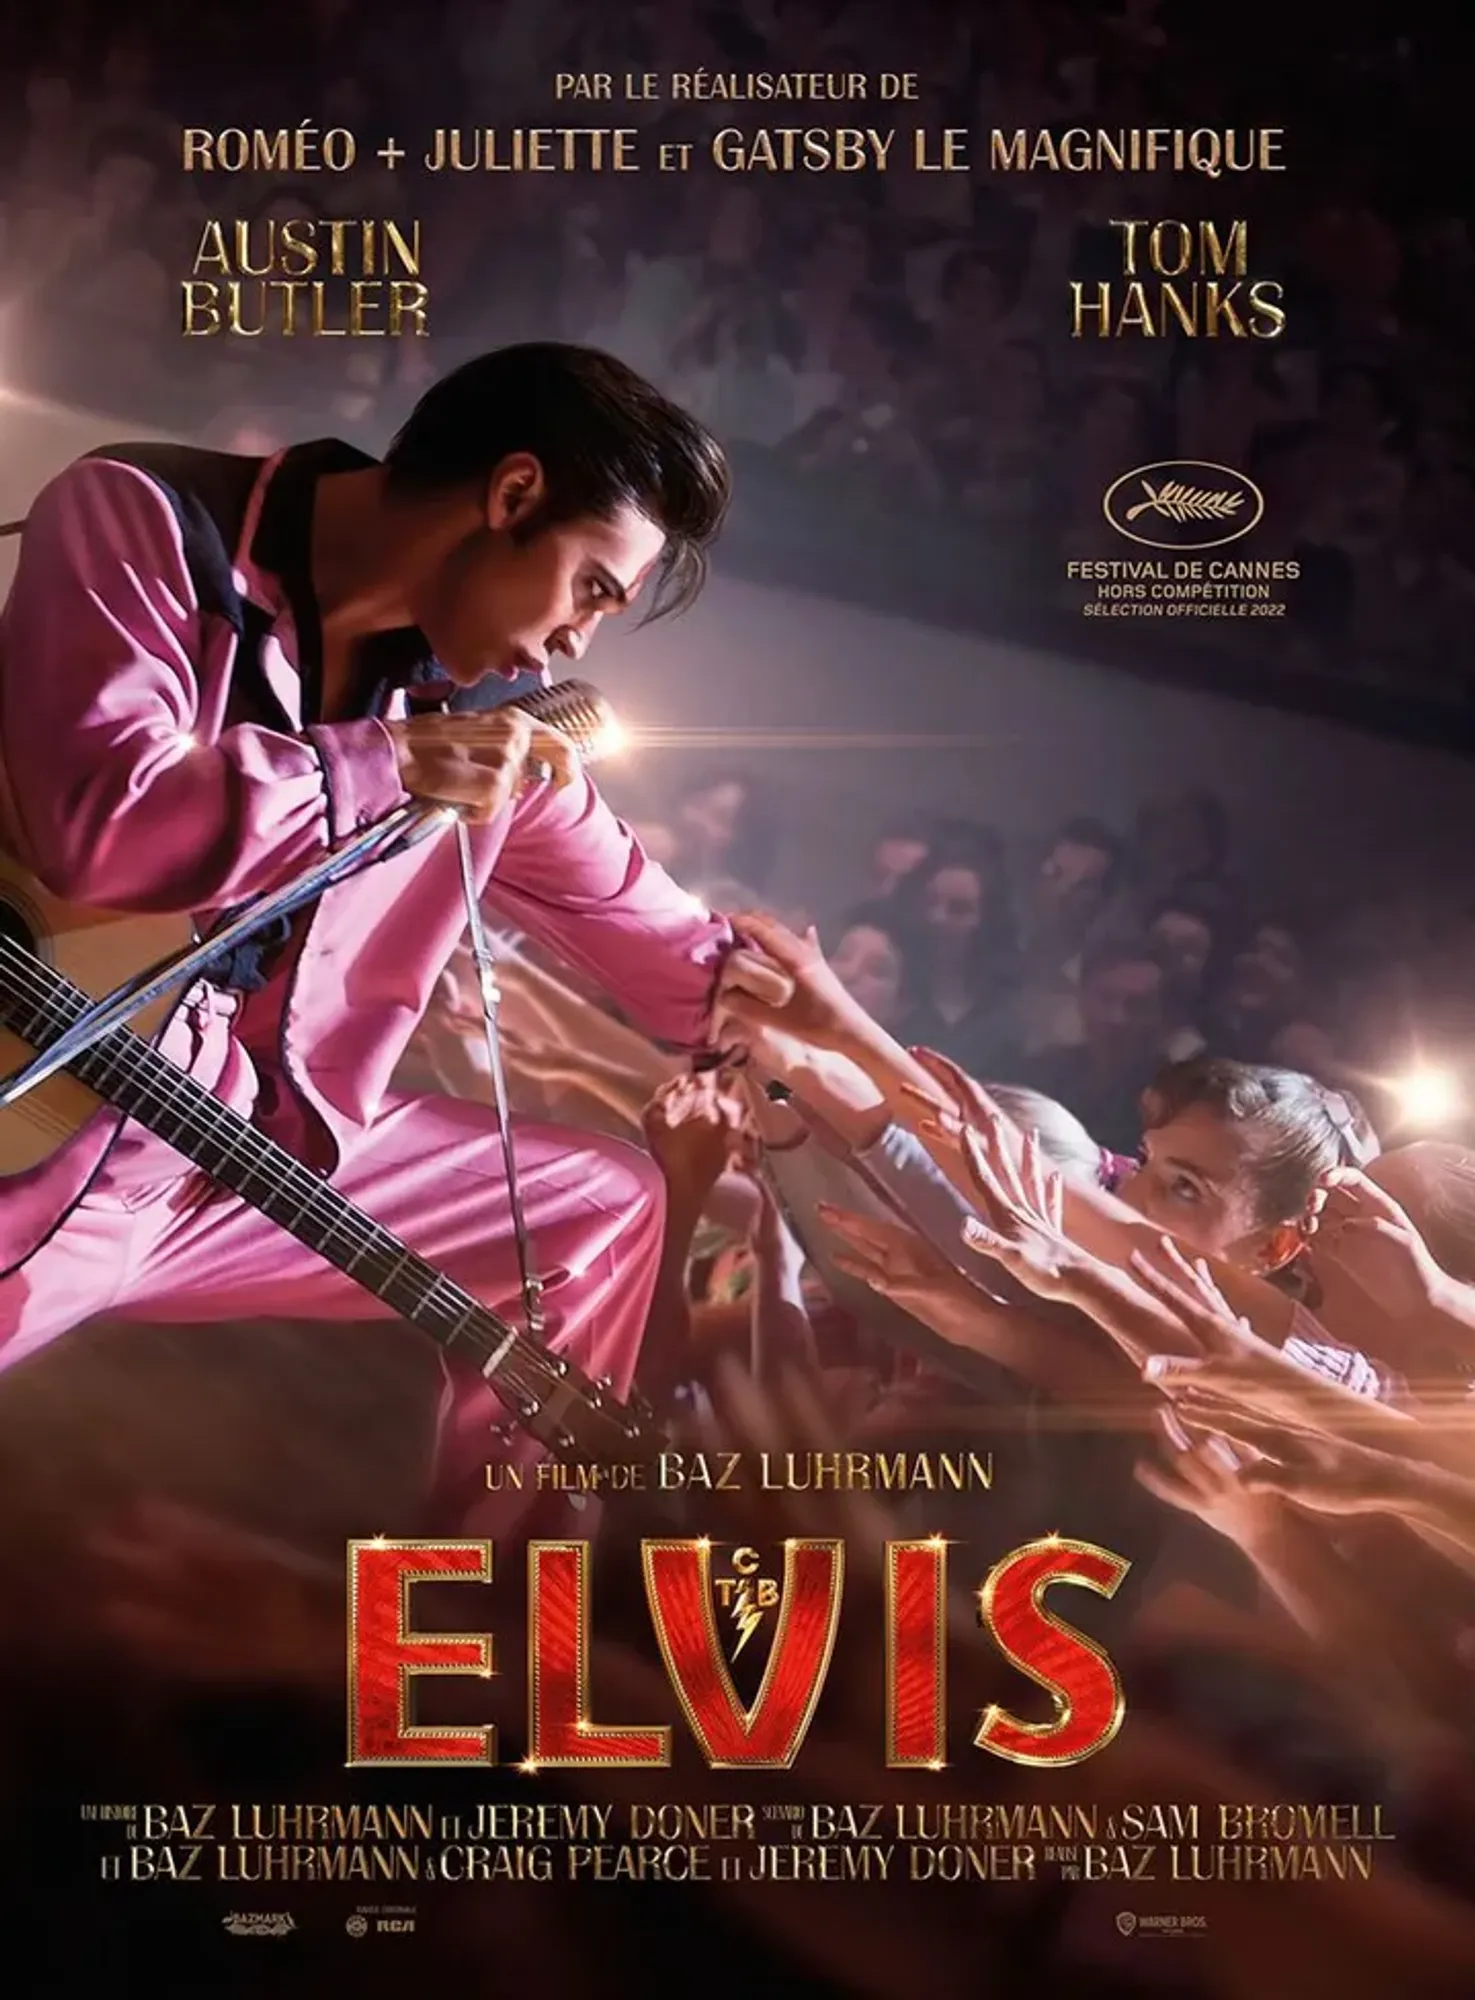 Le nouveau biopic Elvis, qui met à l'honneur la star du rock Elvis Presley 